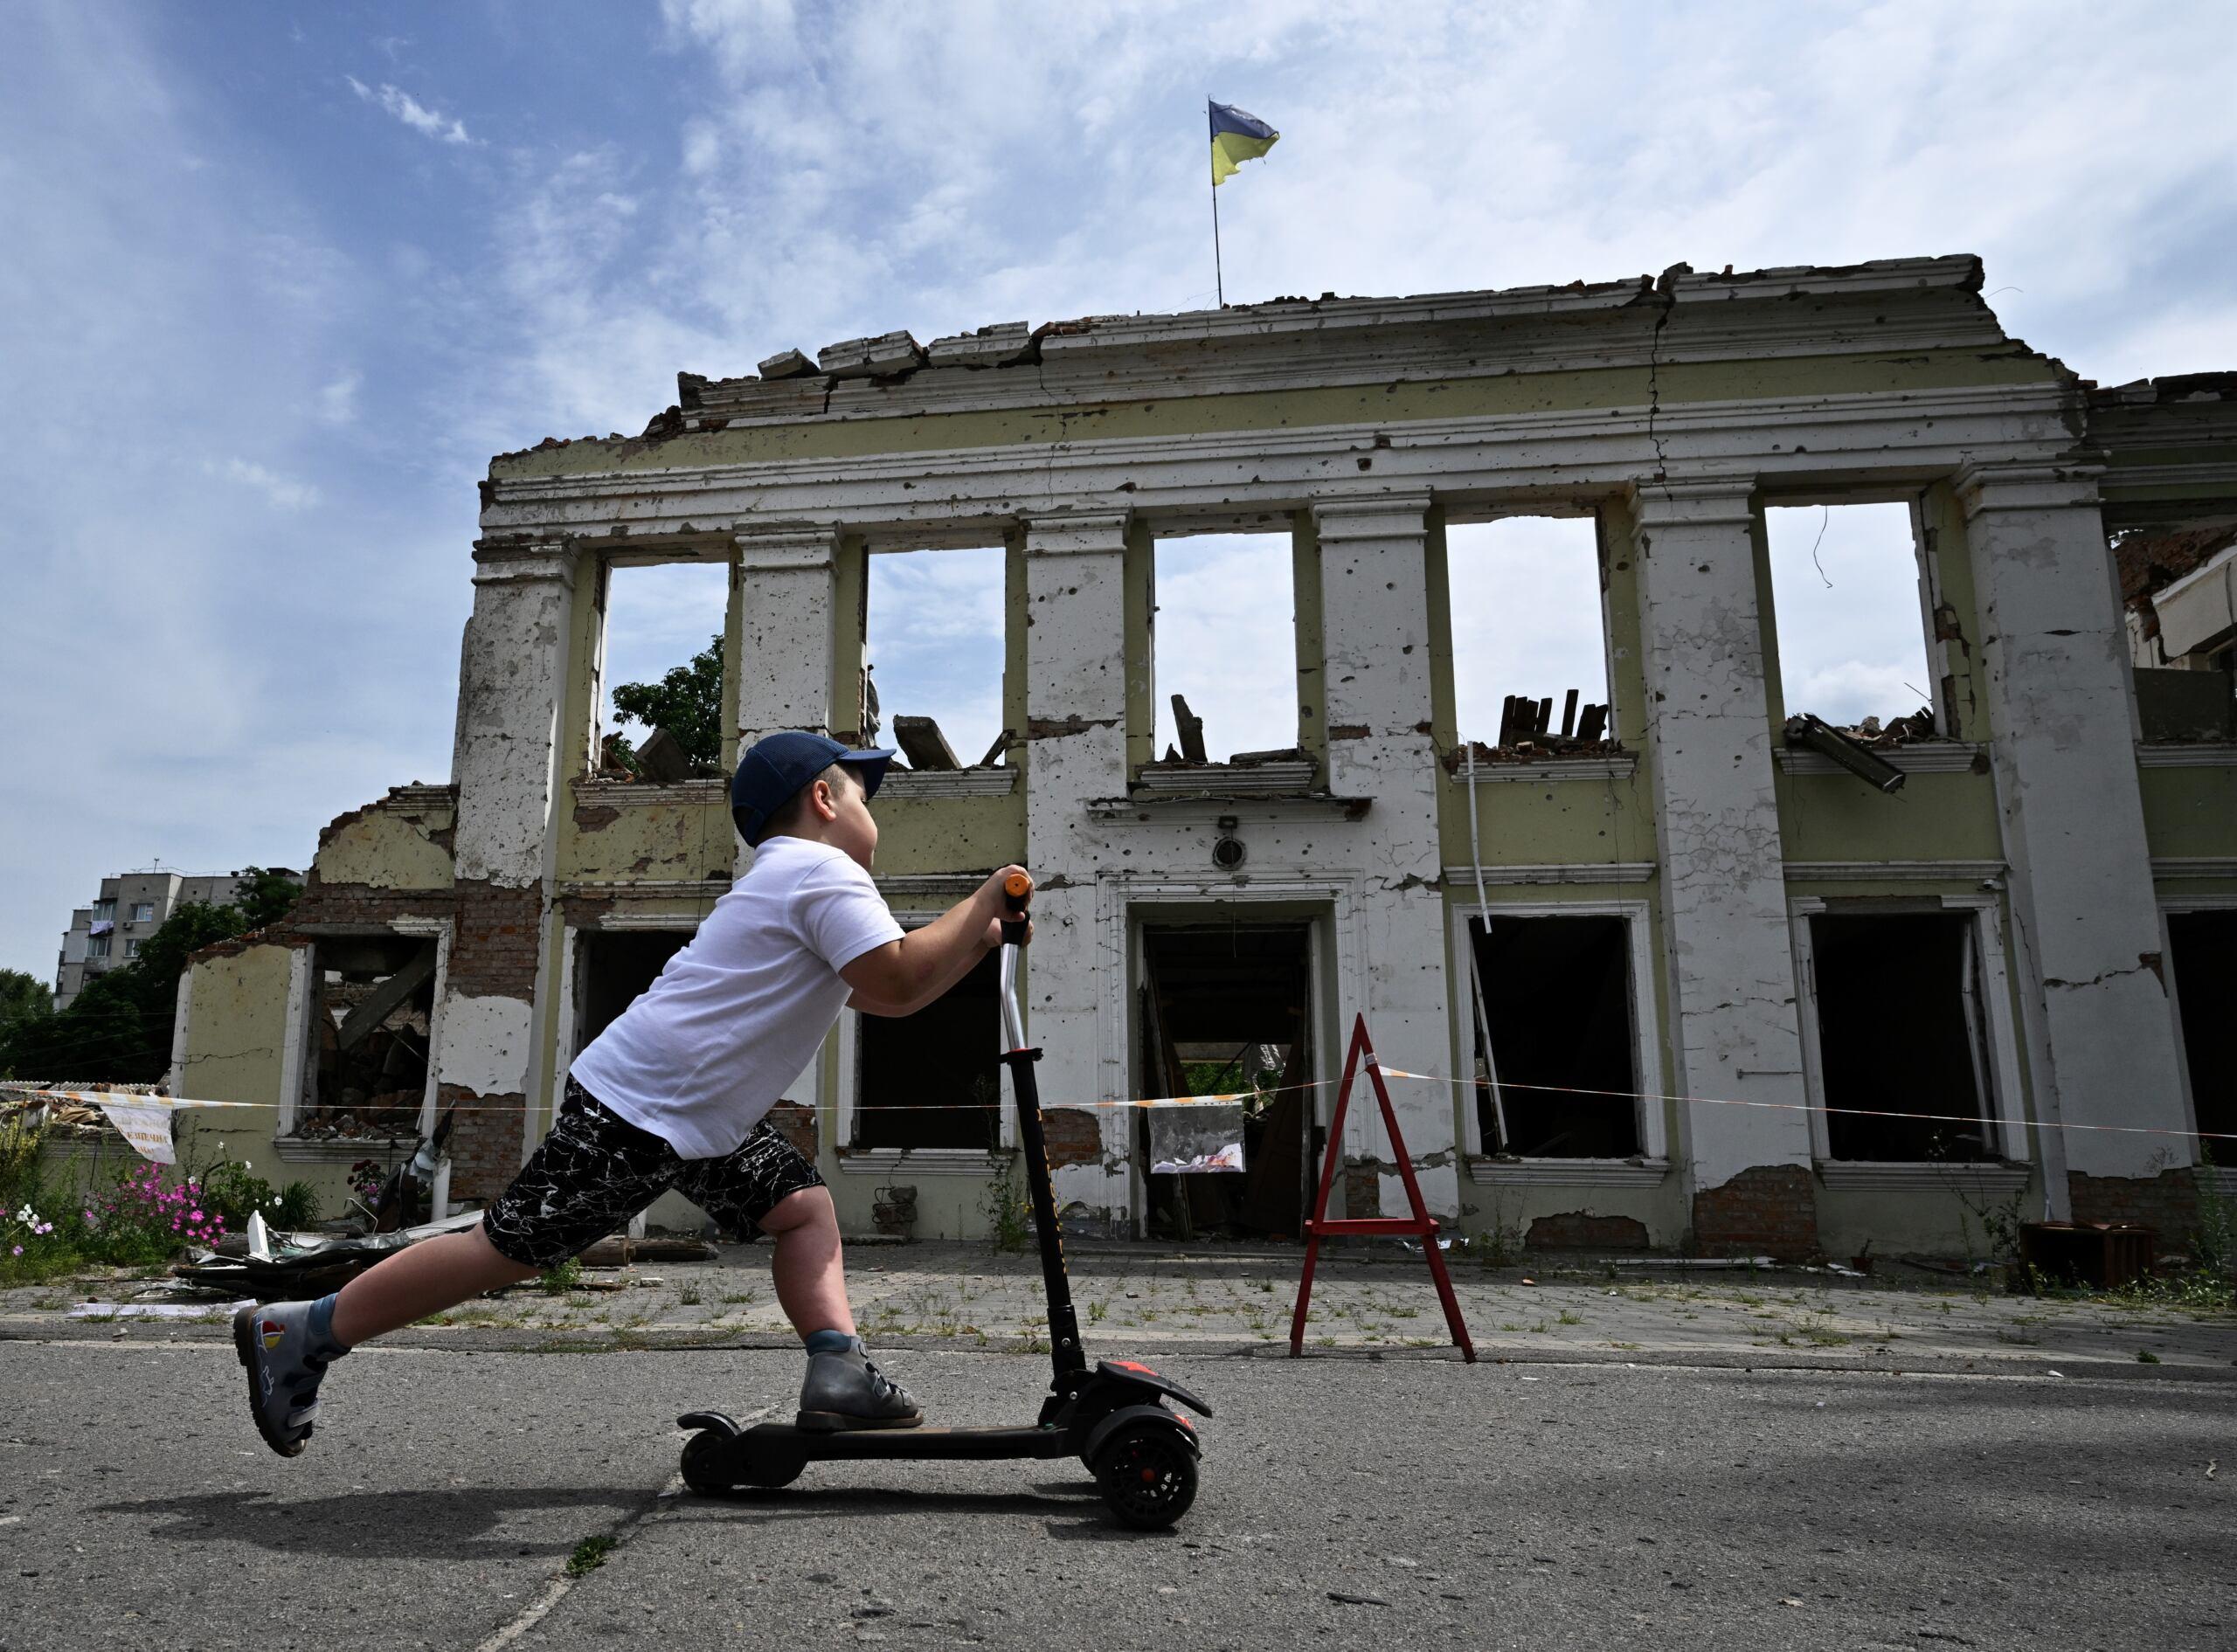 Chłopiec na hulajnodze, w tle zrujnowany budynek z ukraińską flagą